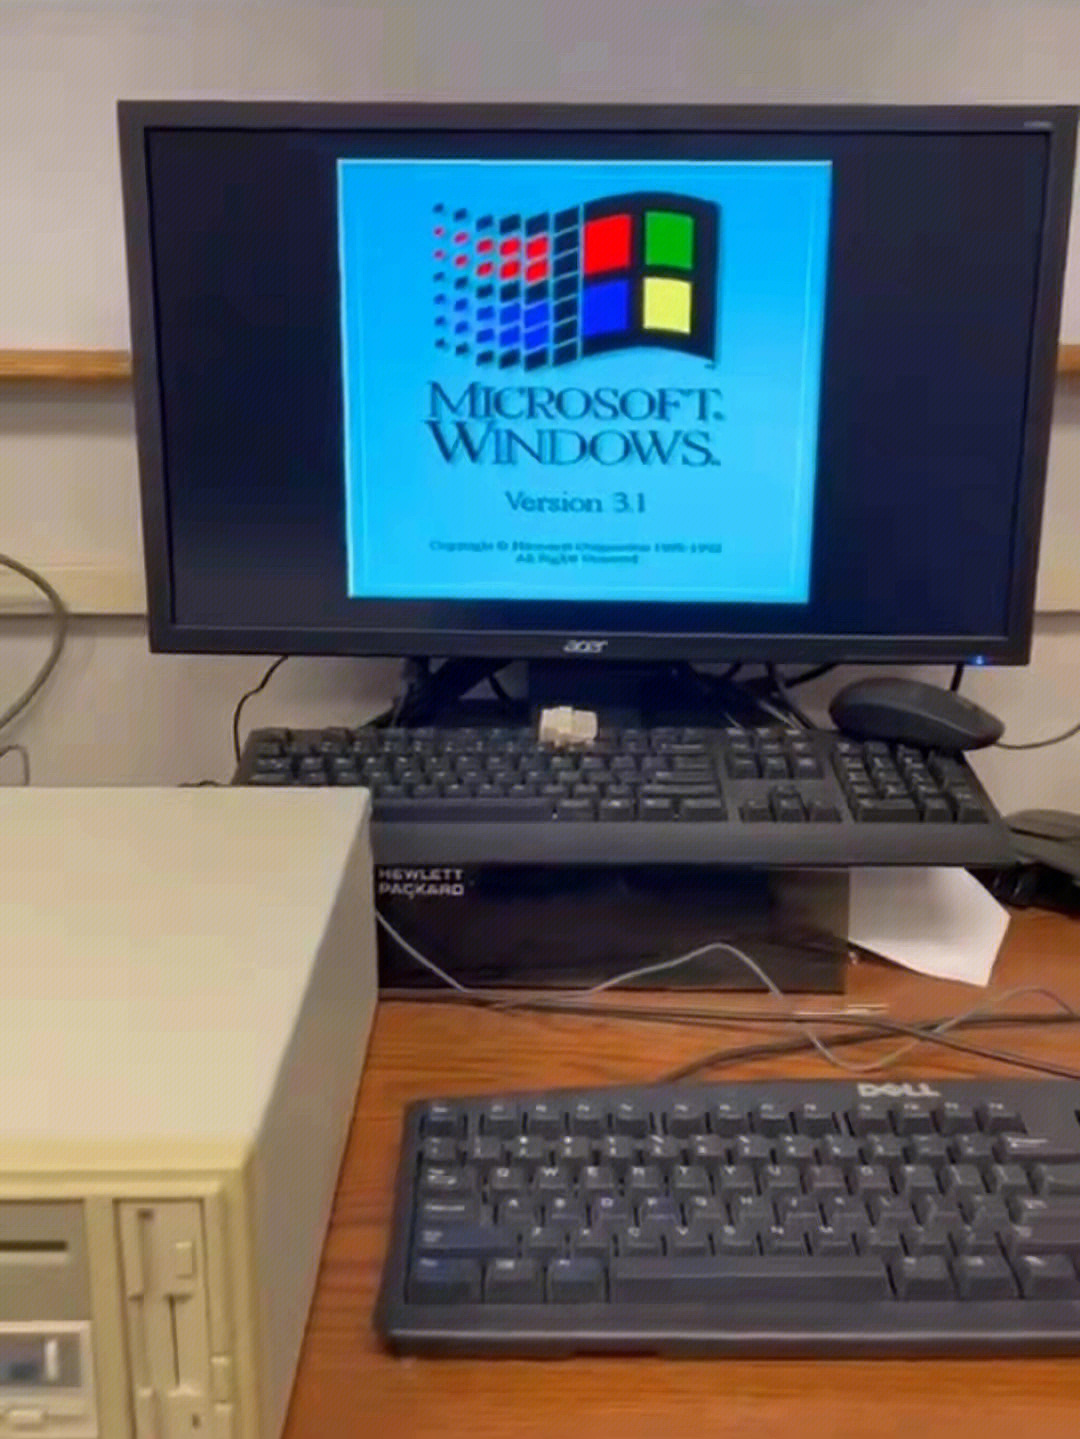 大概发布于1992年后不久,操作系统是微软在1992年4月发布的windows